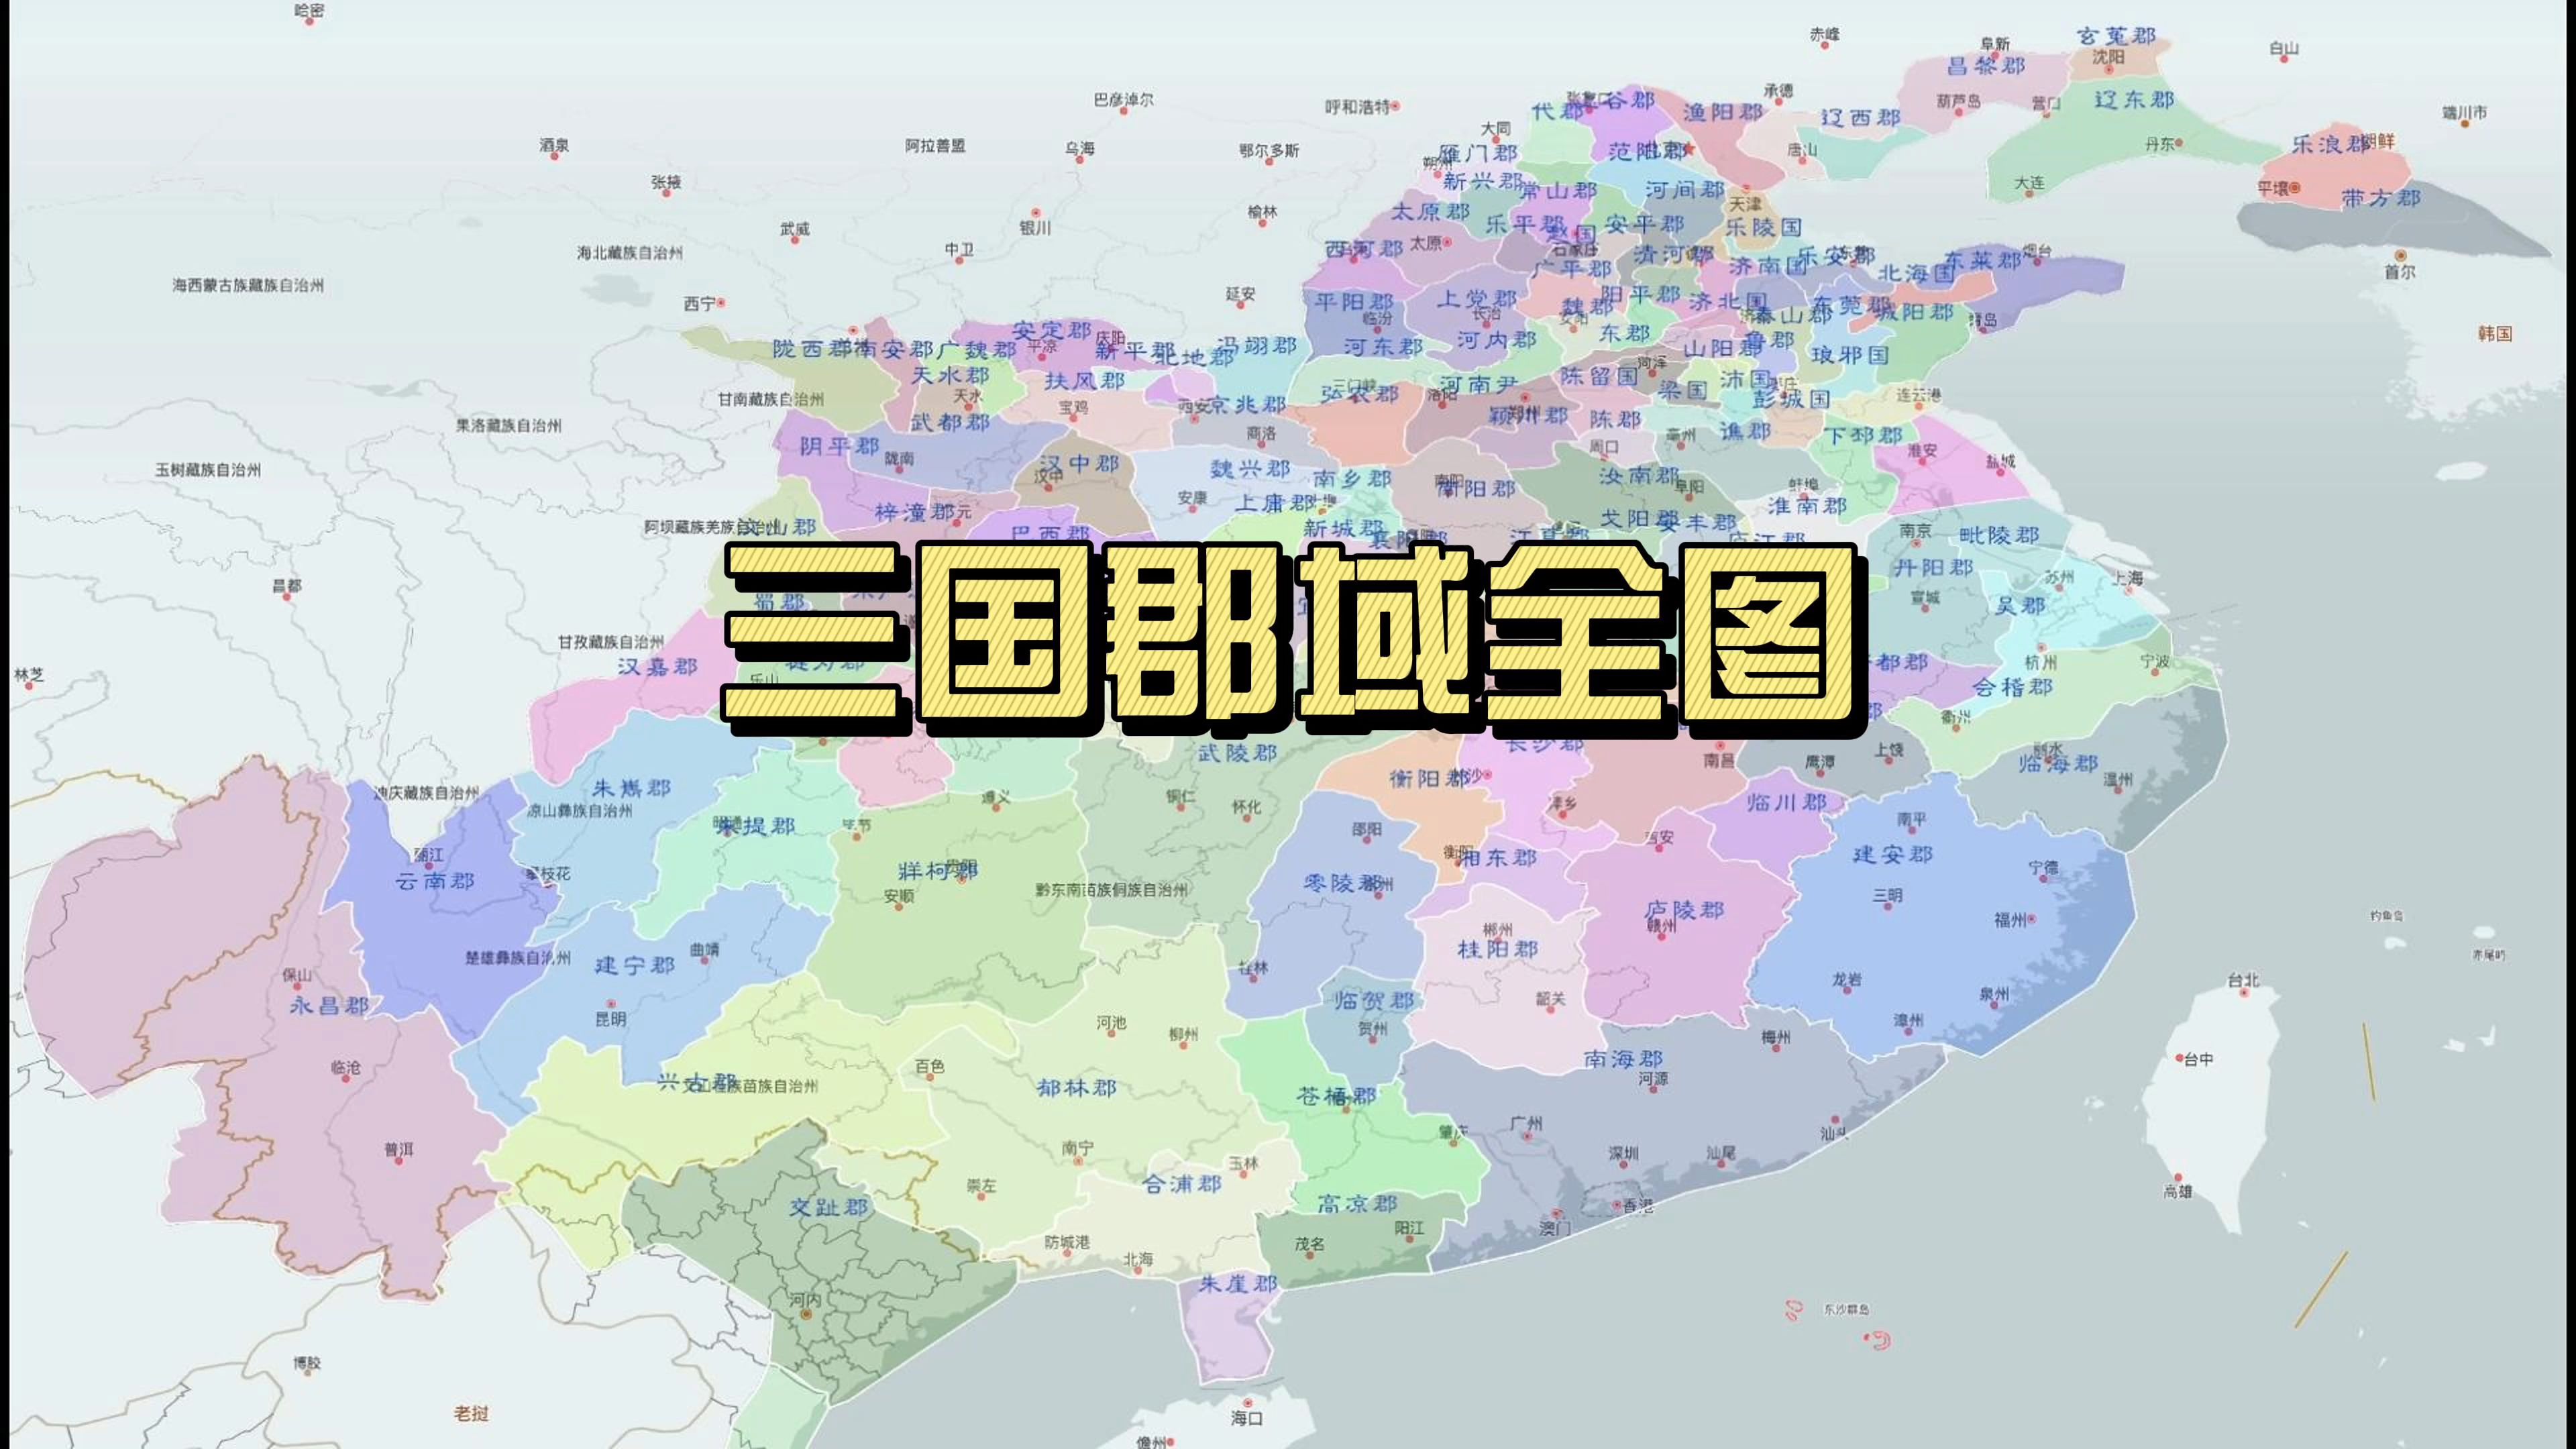 三国超清详细郡县地图图片